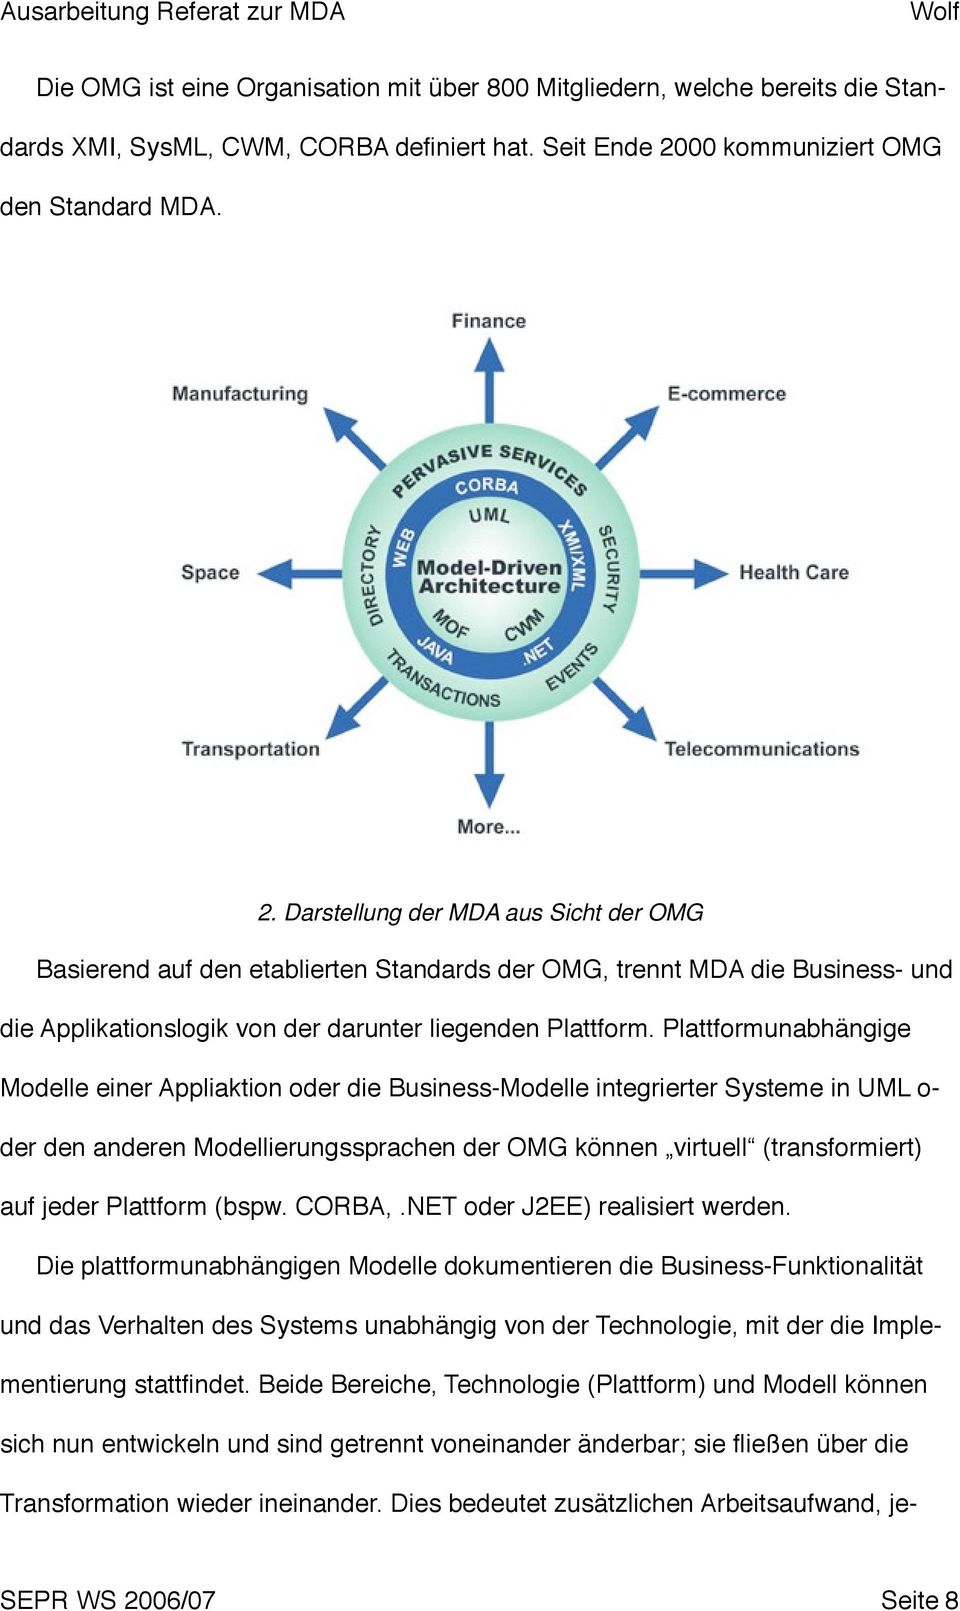 Darstellung der MDA aus Sicht der OMG Basierend auf den etablierten Standards der OMG, trennt MDA die Business- und die Applikationslogik von der darunter liegenden Plattform.